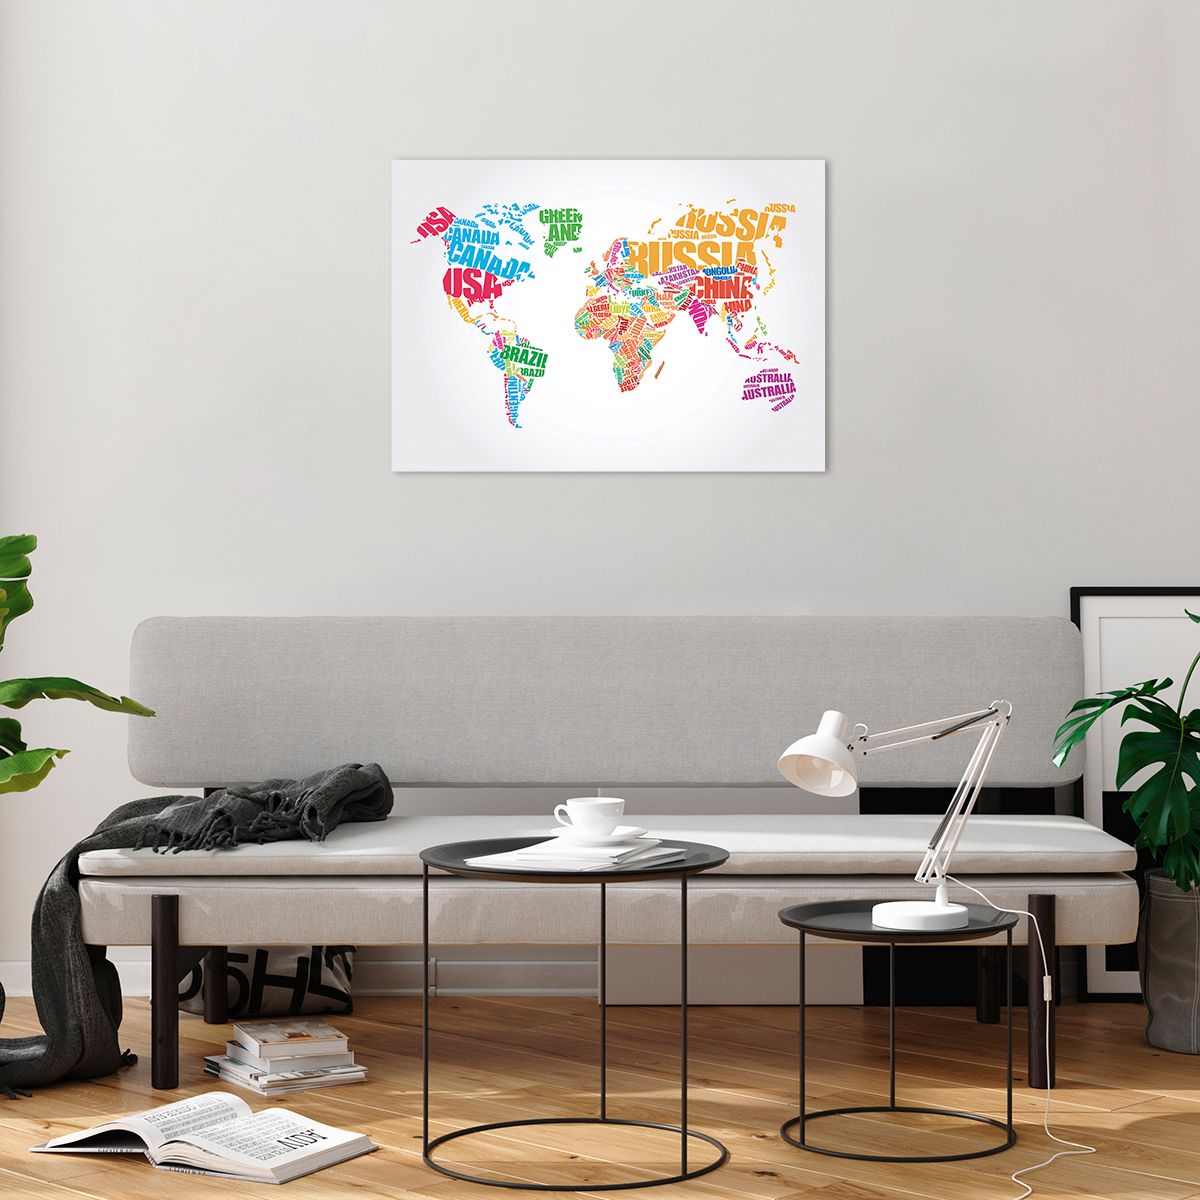 Bilder auf glas Weltkarte, Bilder auf glas Grafik, Bilder auf glas Kontinente, Bilder auf glas Planet, Bilder auf glas Reisen